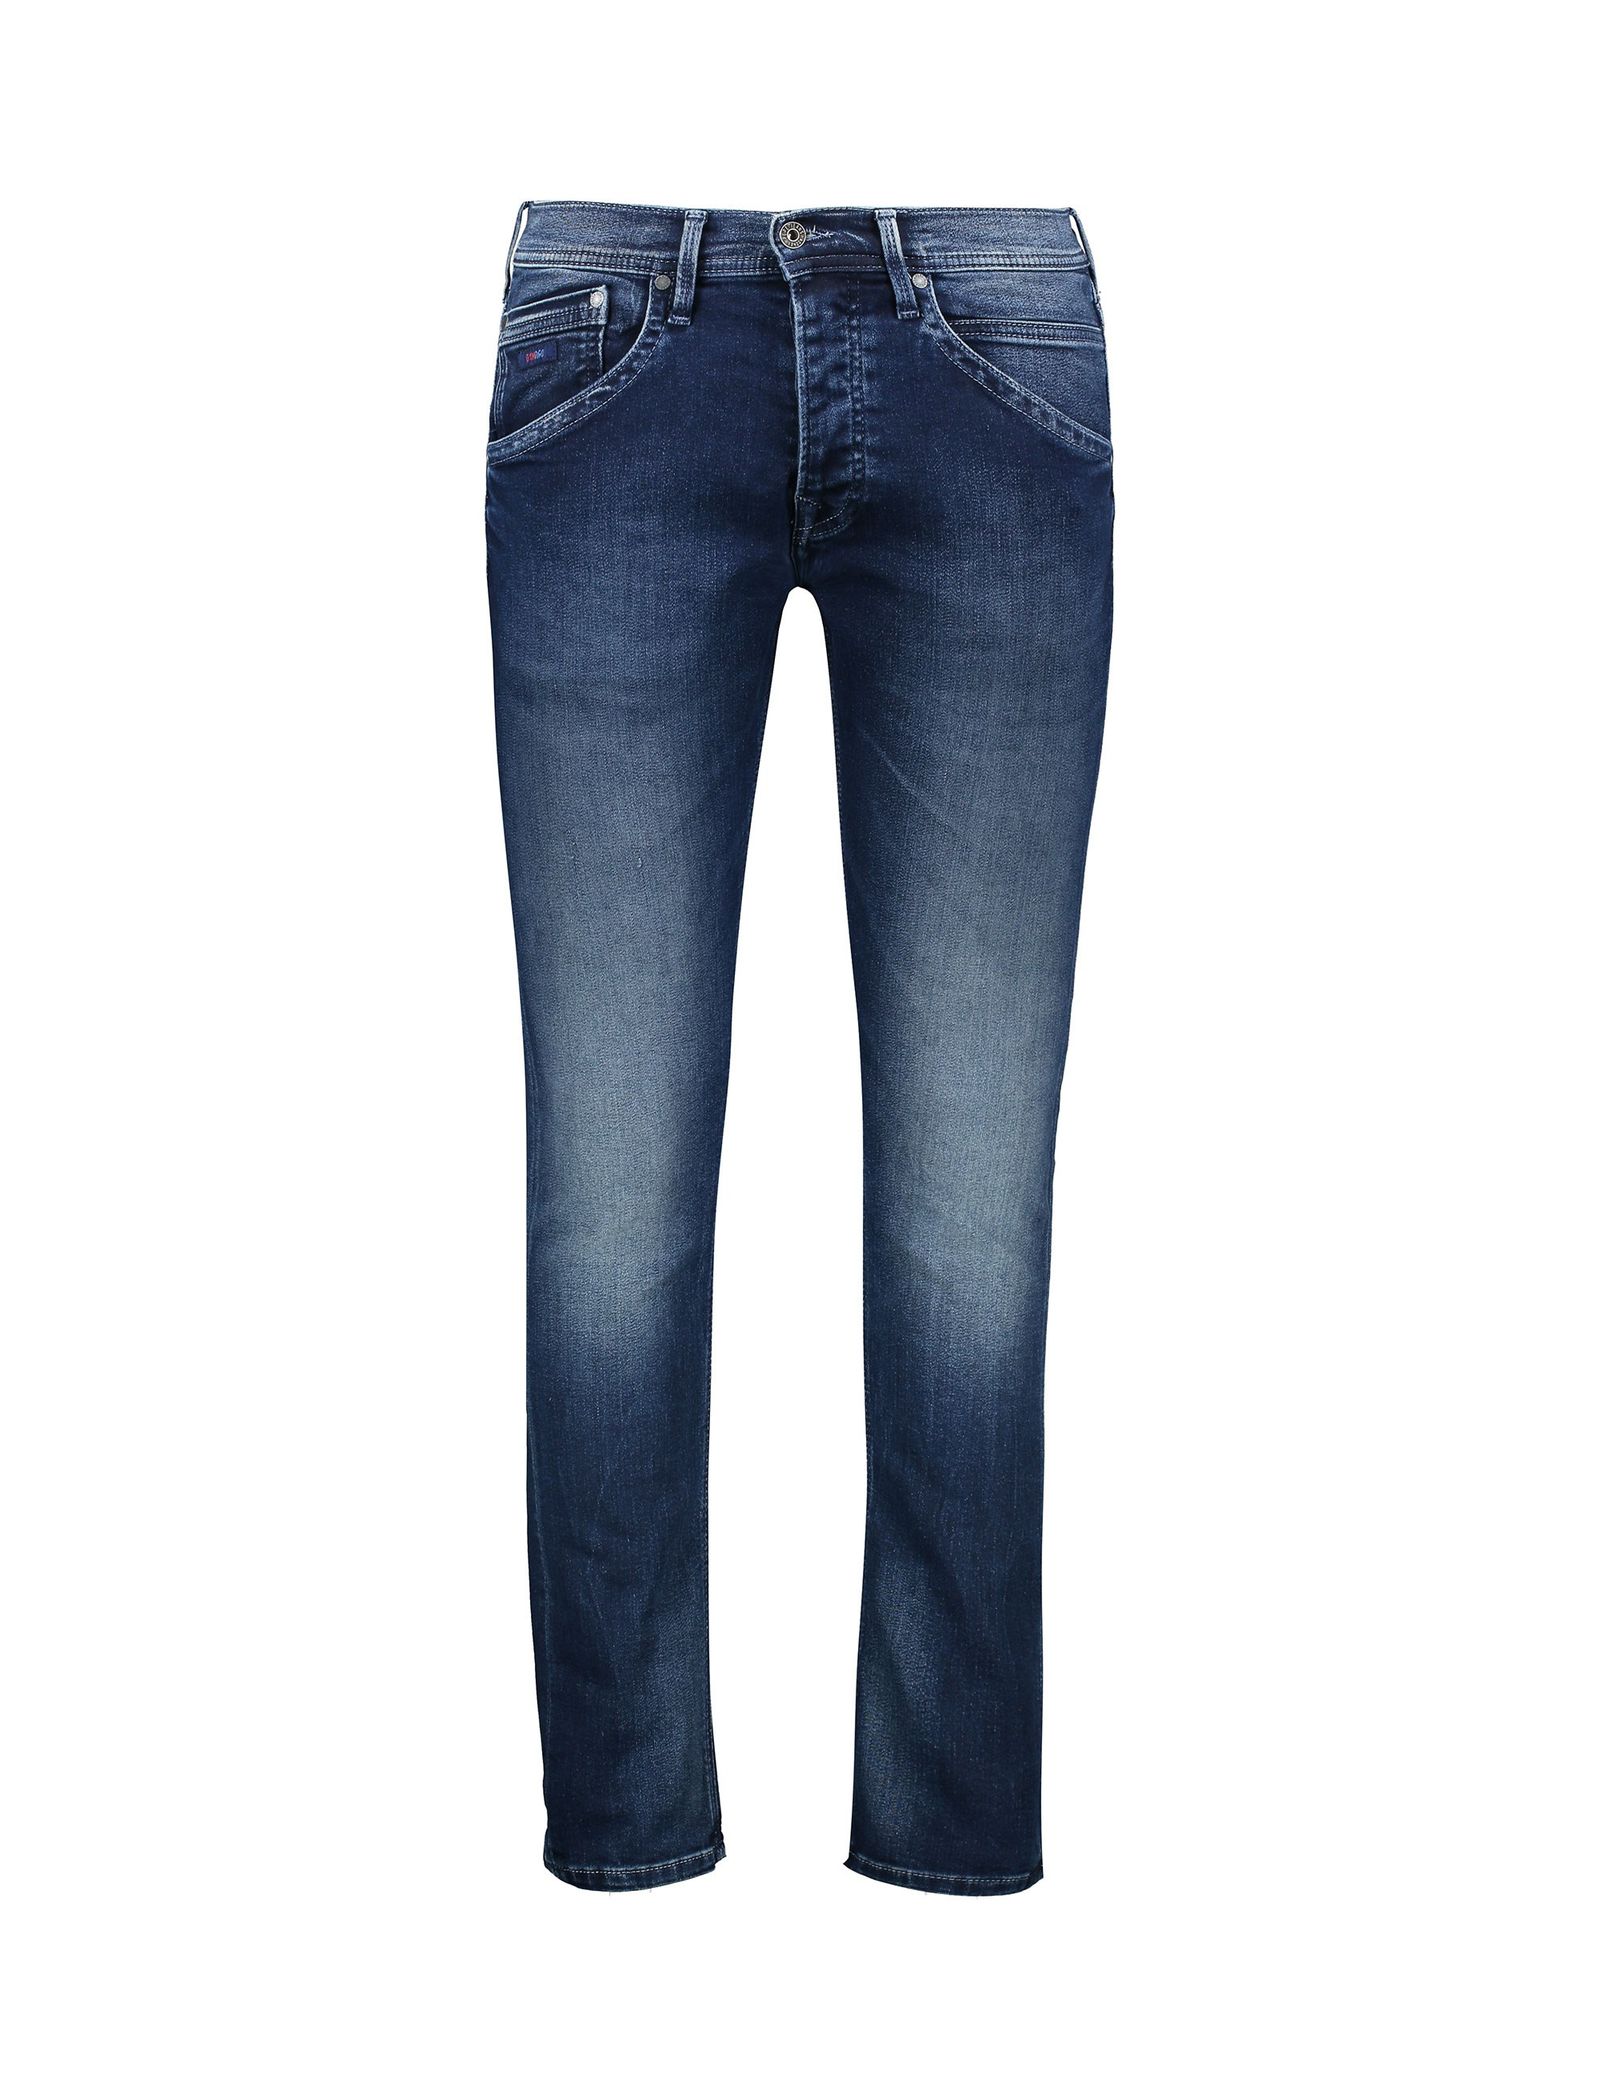 شلوار جین راسته مردانه TRACK - پپه جینز - آبي تيره - 1